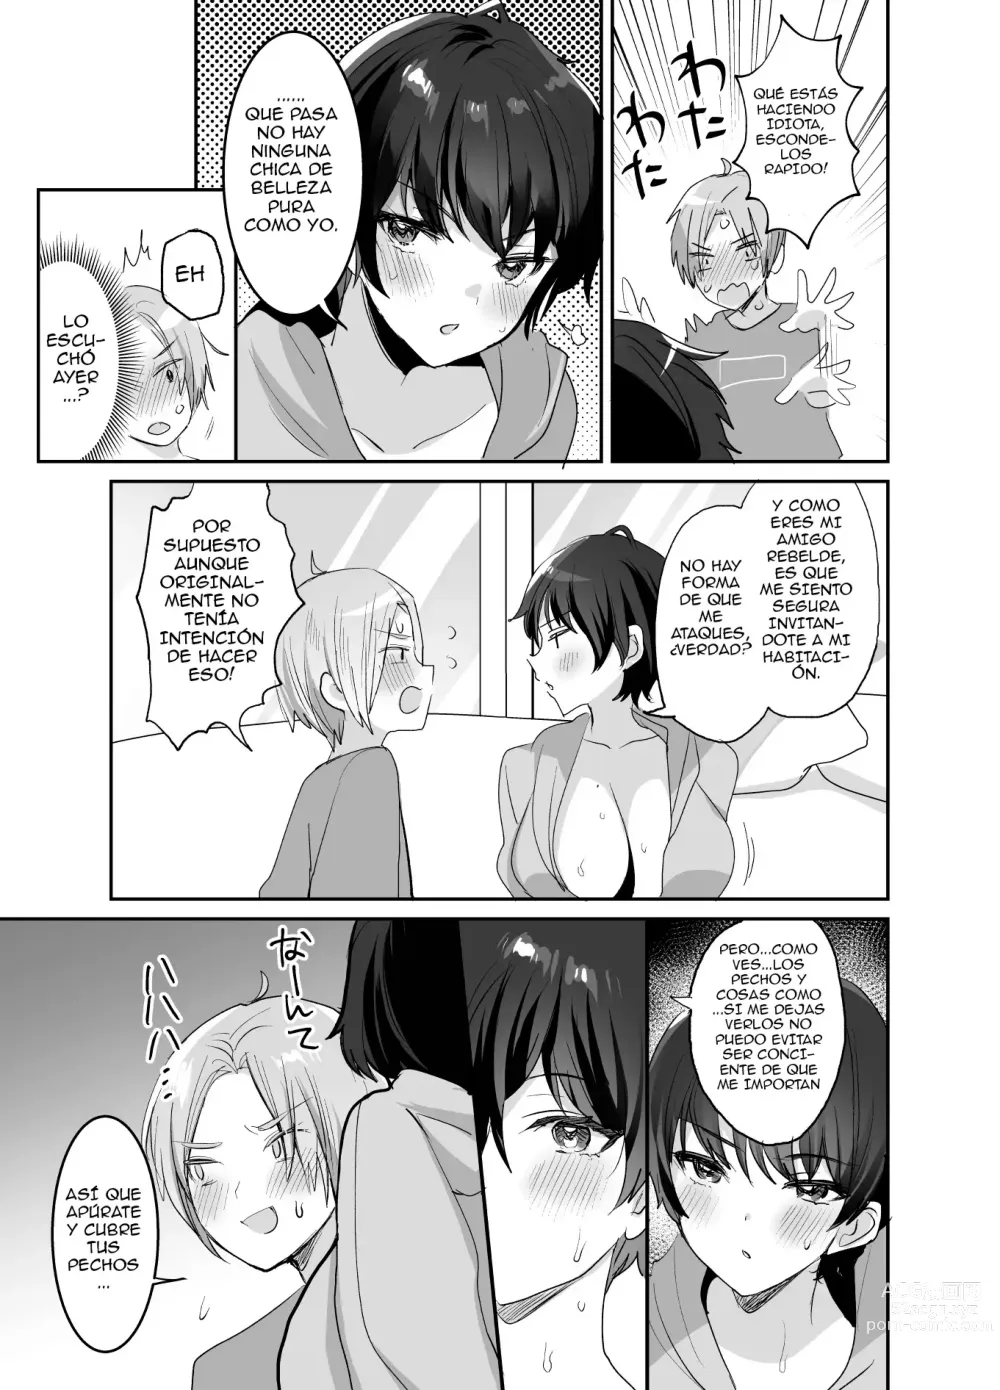 Page 7 of doujinshi ¿Somos amigos, verdad? ~Una amiga de grandes pechos me obligó a tener sexo rudo hasta la mañana.〜